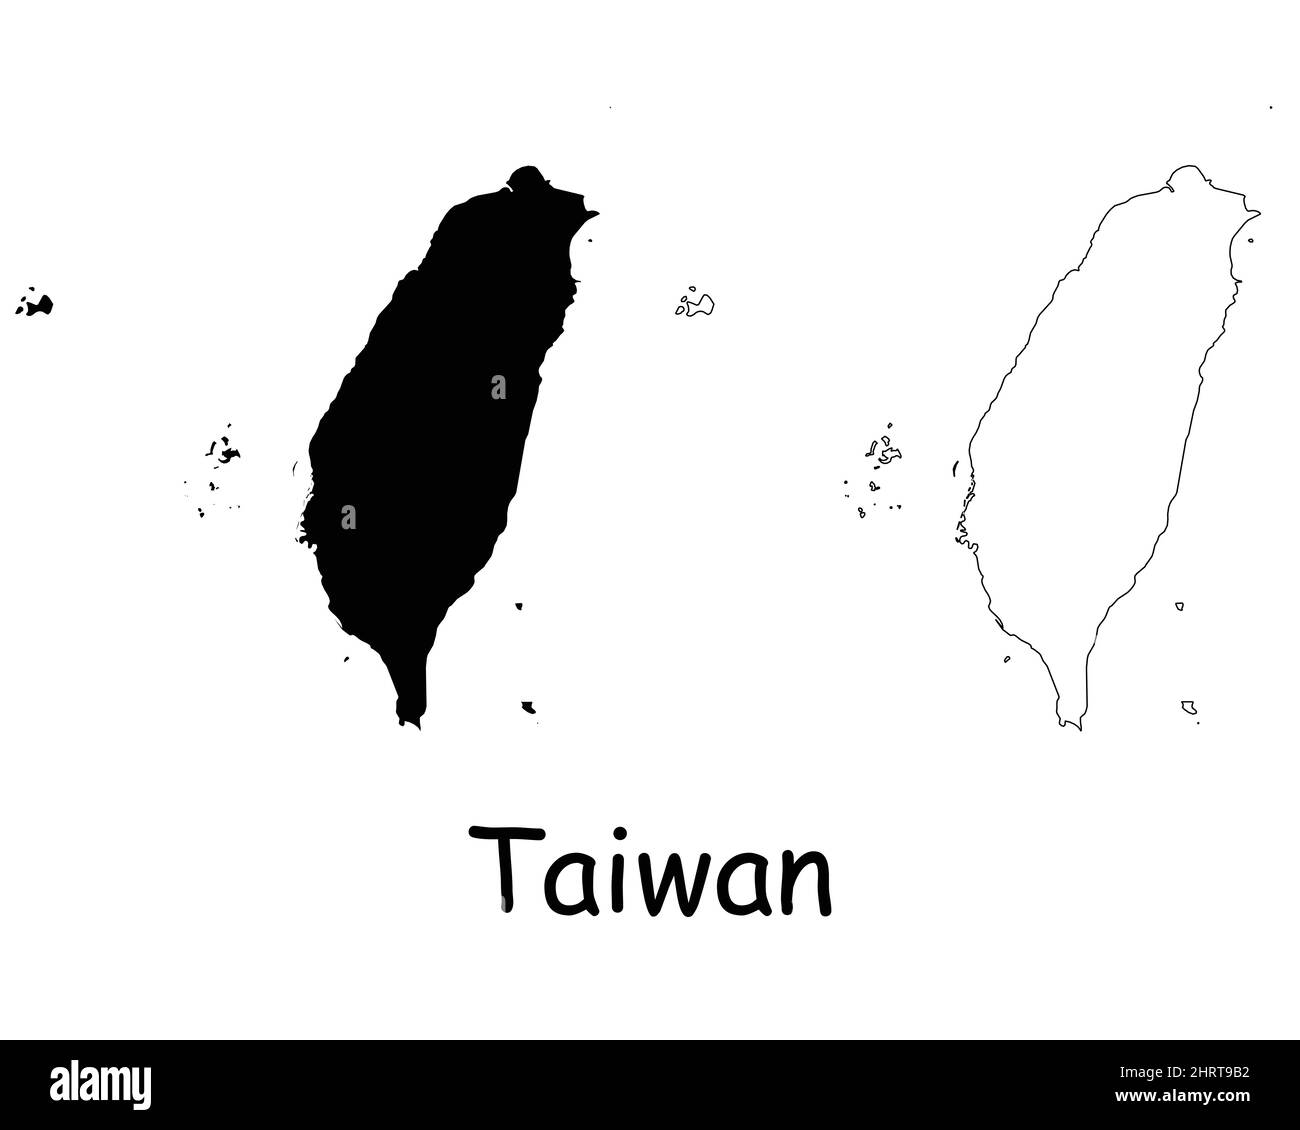 Taiwan-Karte. Taiwanesische schwarze Silhouette und Umrisskarte isoliert auf weißem Hintergrund. Republik China Grenzgebiet Grenzlinie Symbol Symbol Zeichen Symbol Stock Vektor